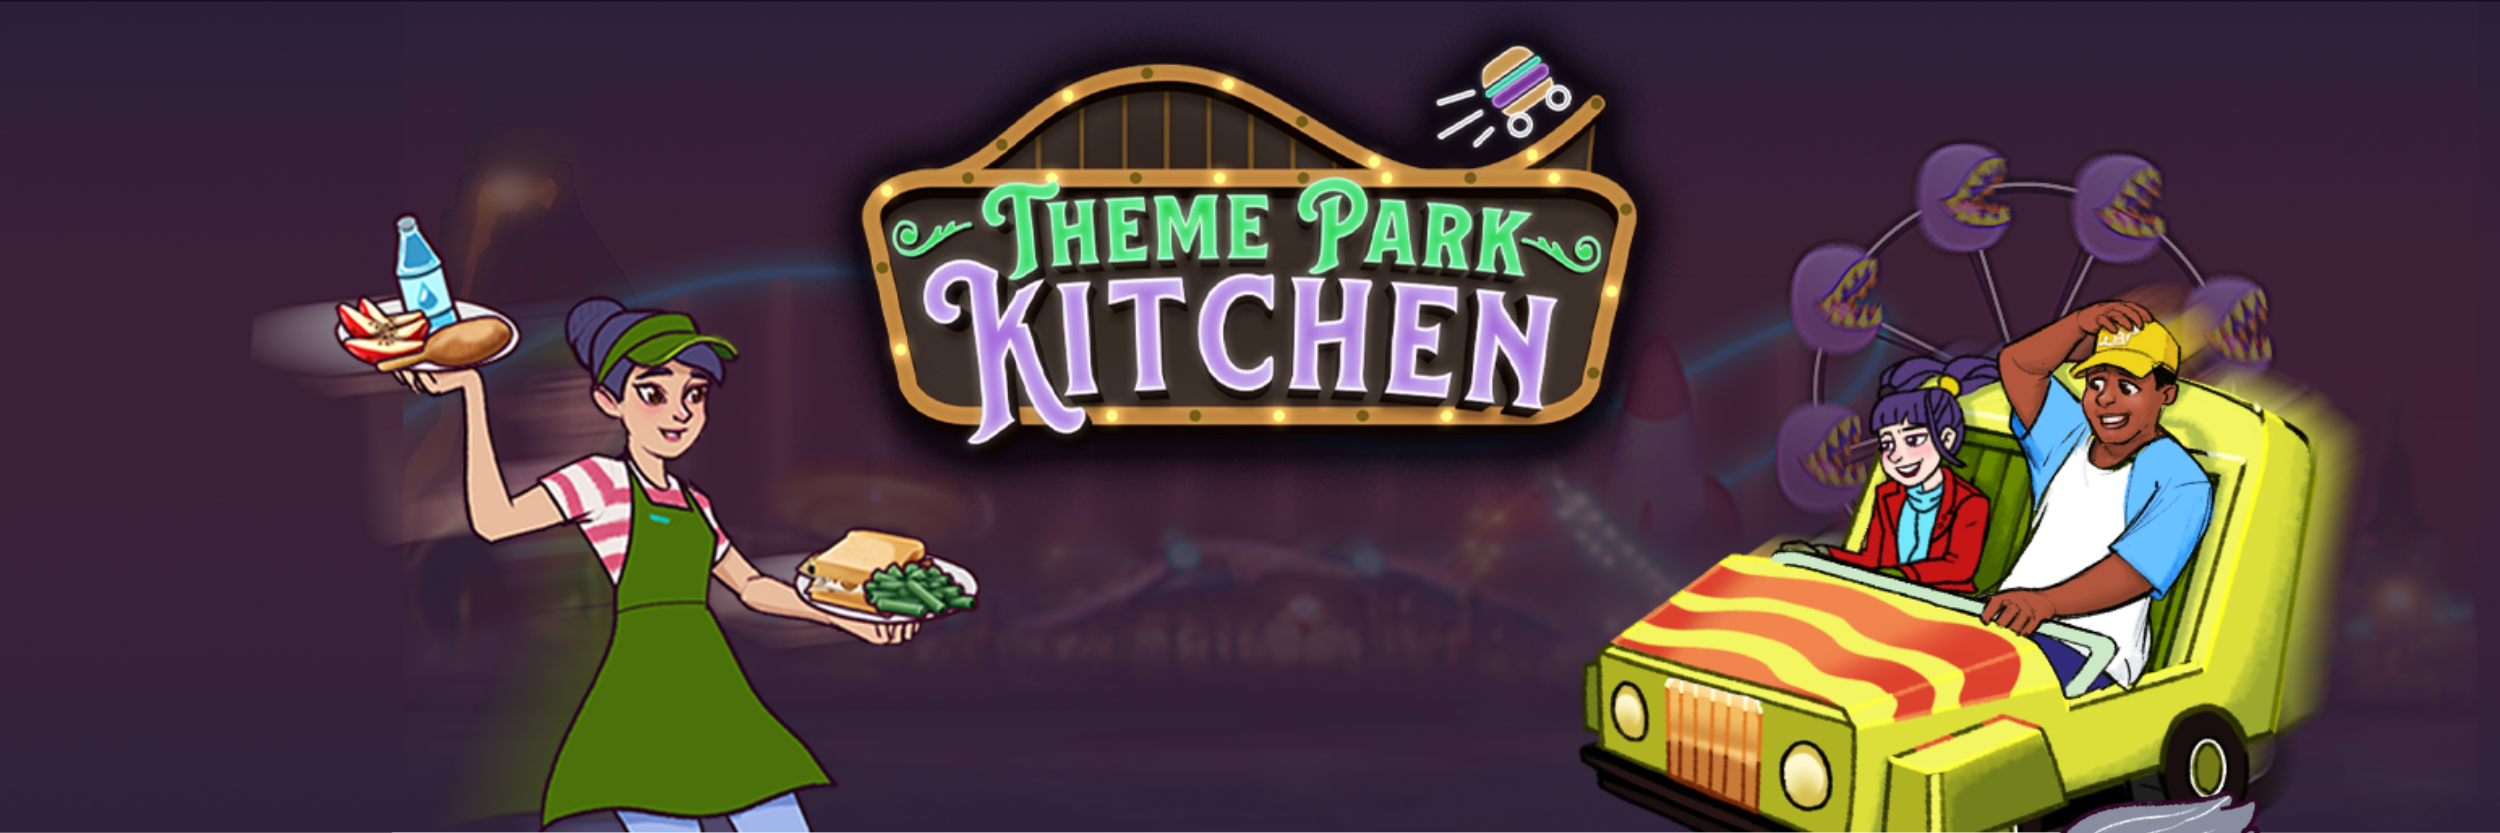 Theme Park Kitchen banner